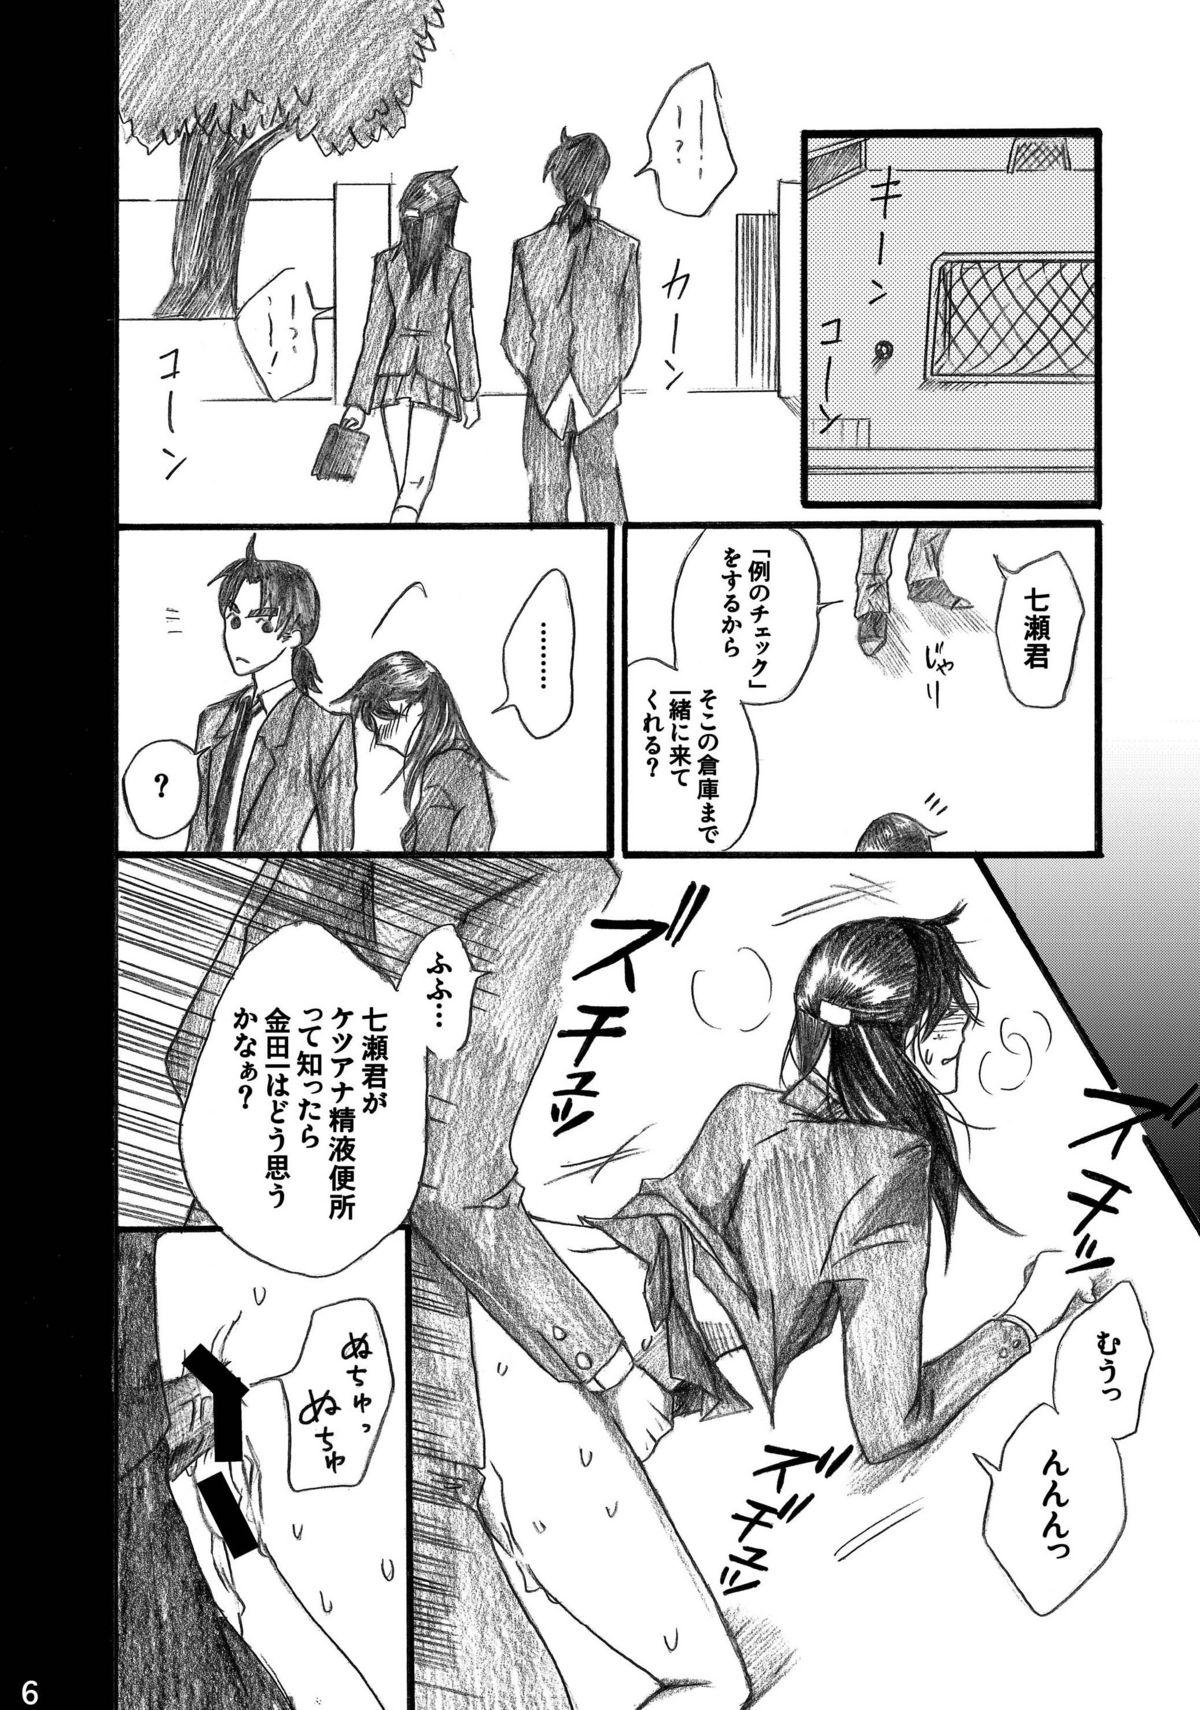 Sex Massage Nanase Shoujo no Jikenbo Case 4 - Kindaichi shounen no jikenbo Pauzudo - Page 6